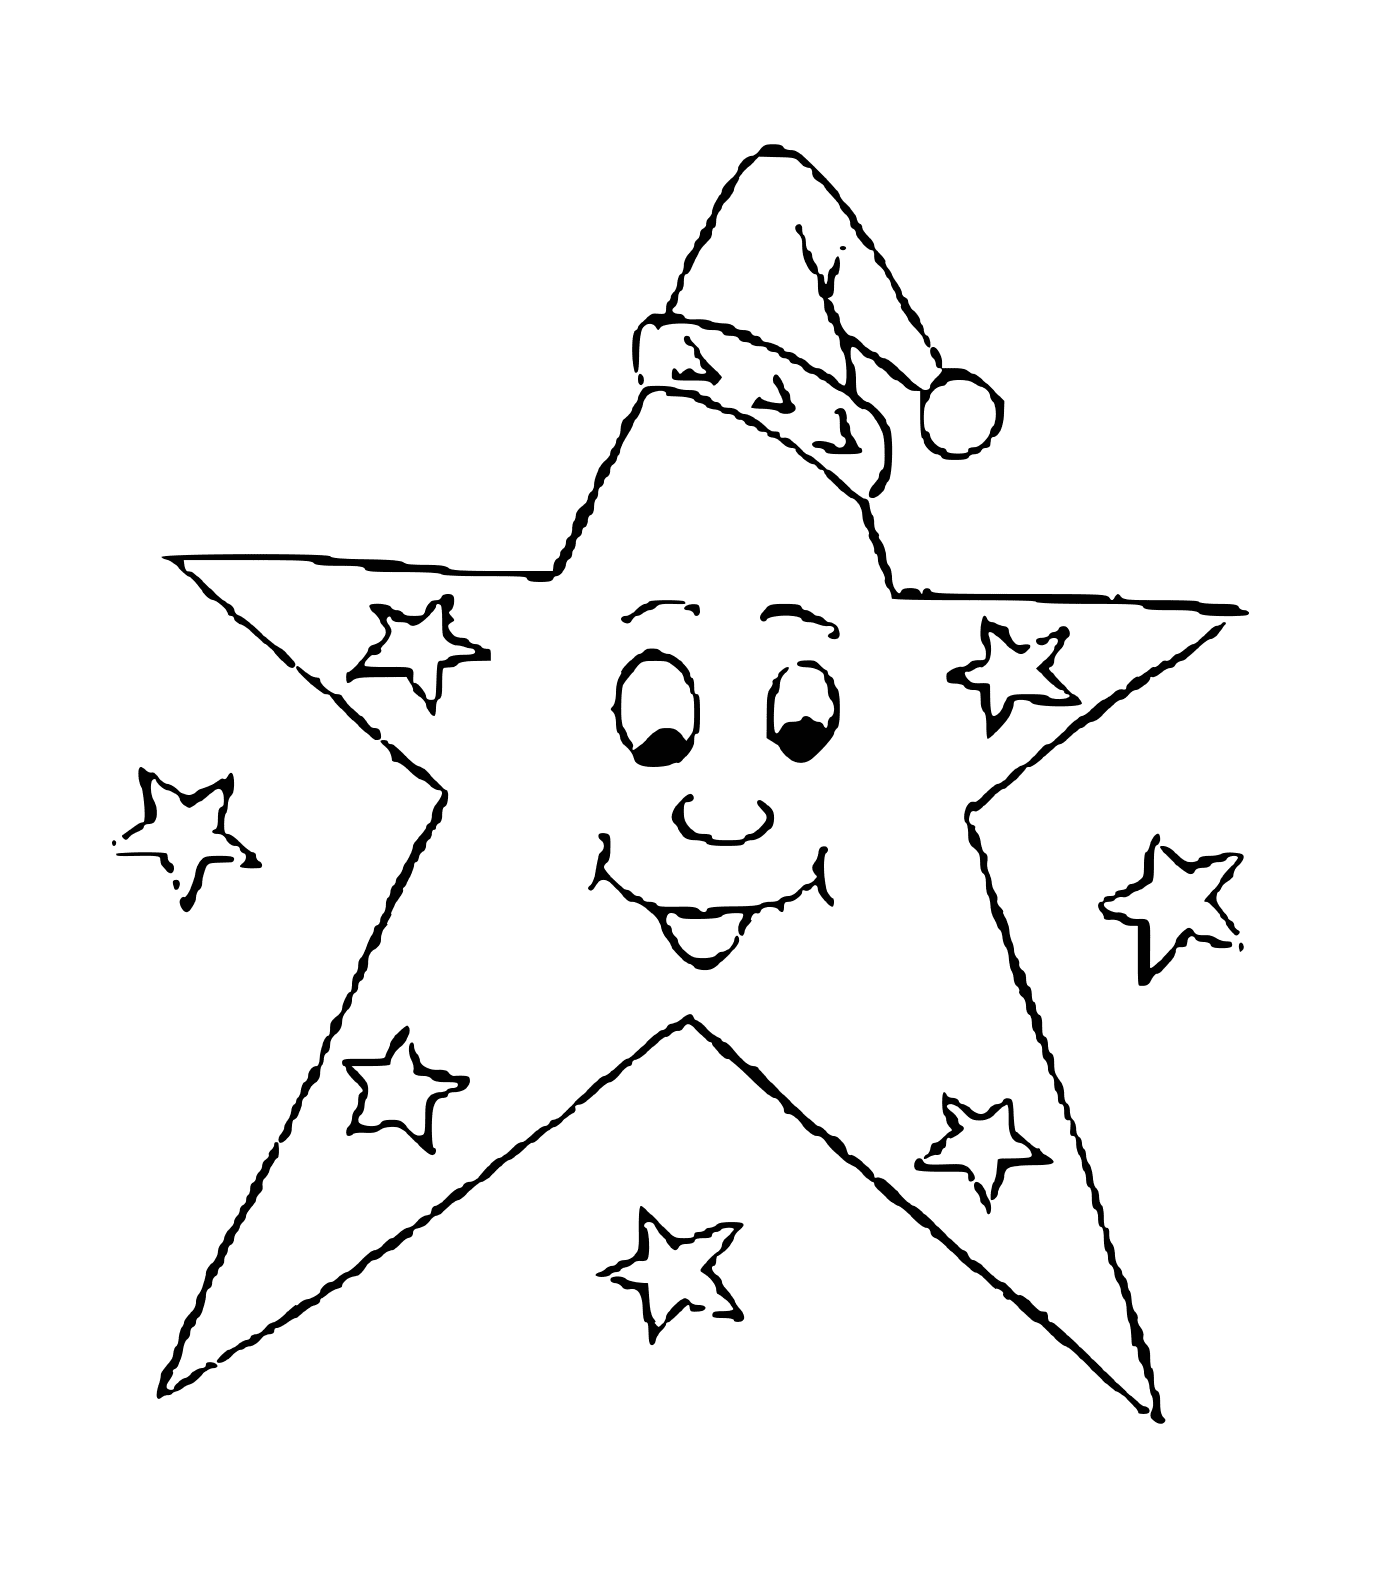  Ein lächelnder Stern voller Humor 